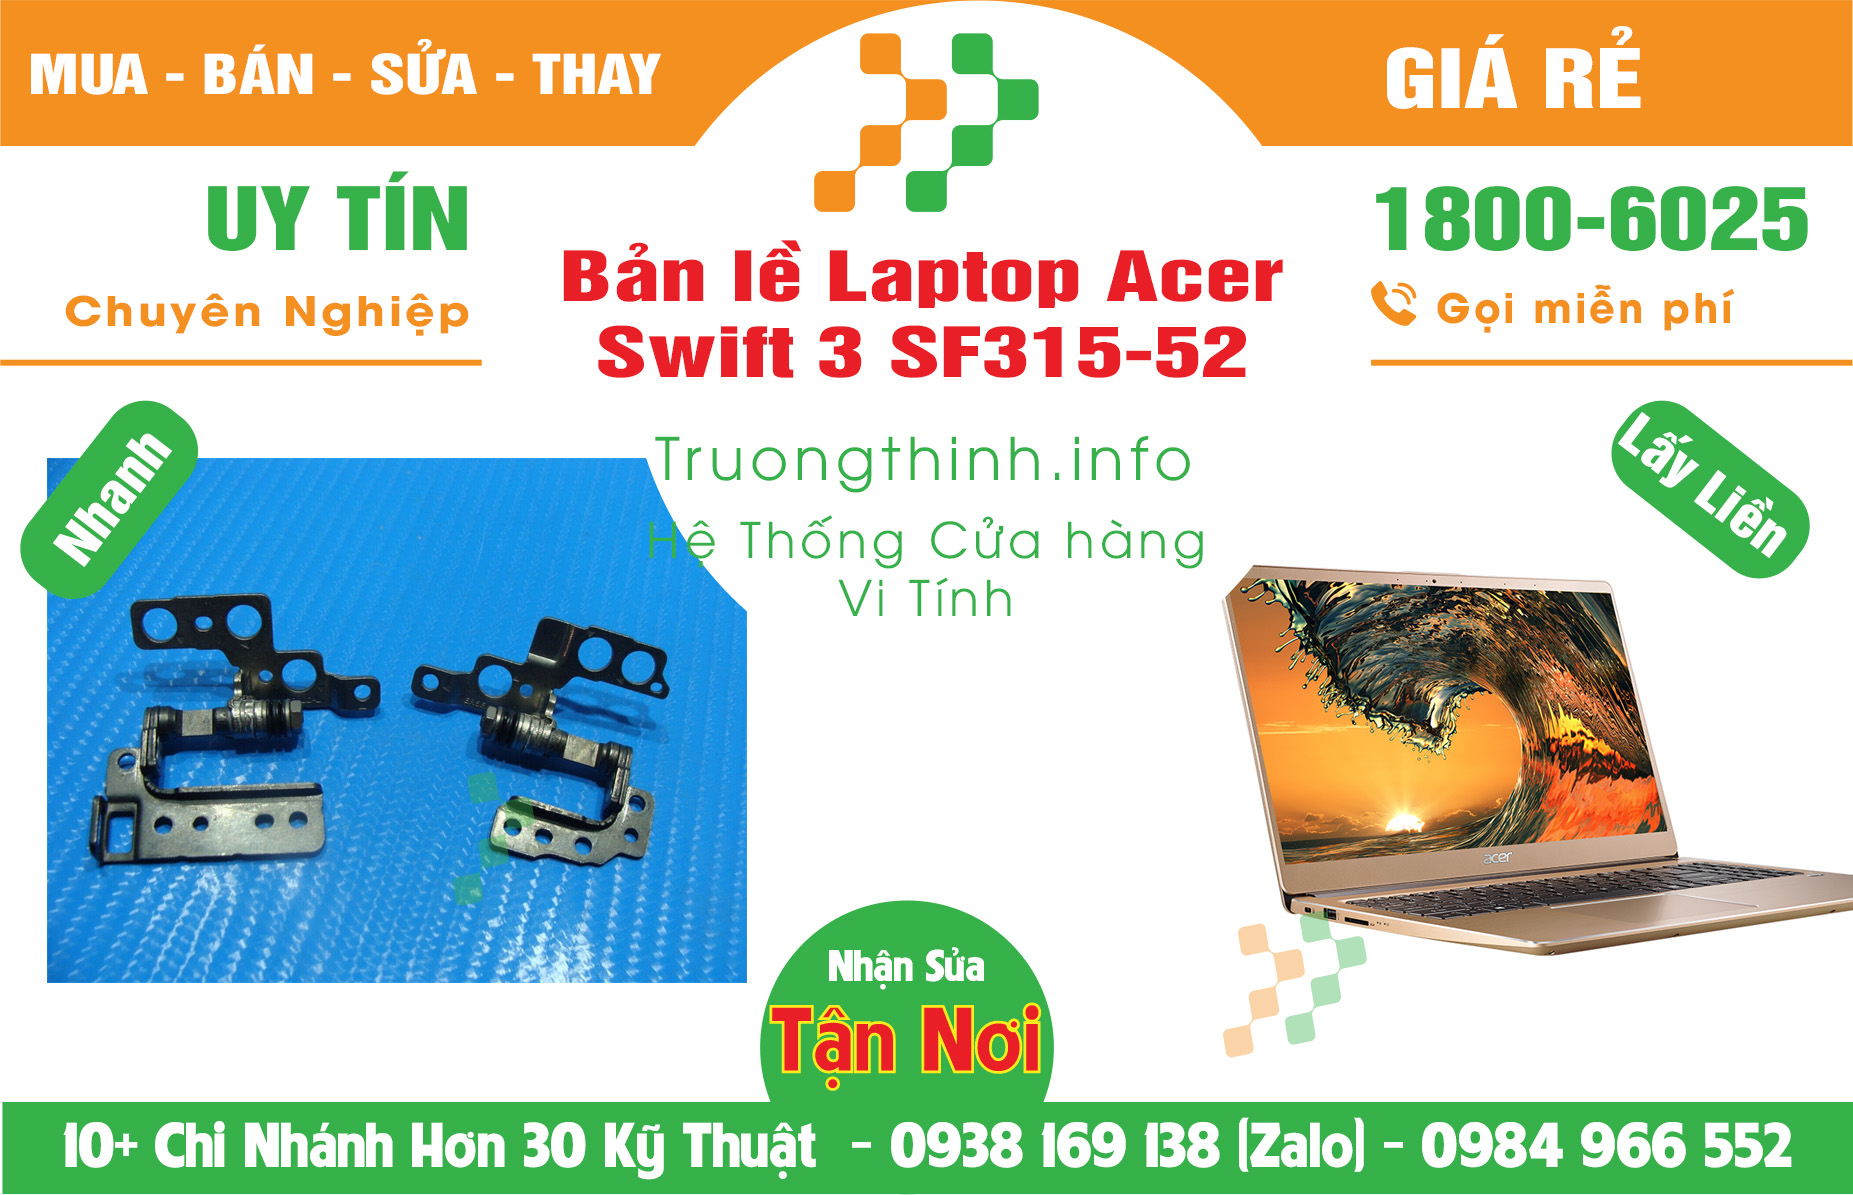 Mua Bán Bản lề Laptop Acer Swift 3 SF315-52 Giá Rẻ | Máy Tính Trường Thịnh Giá Rẻ